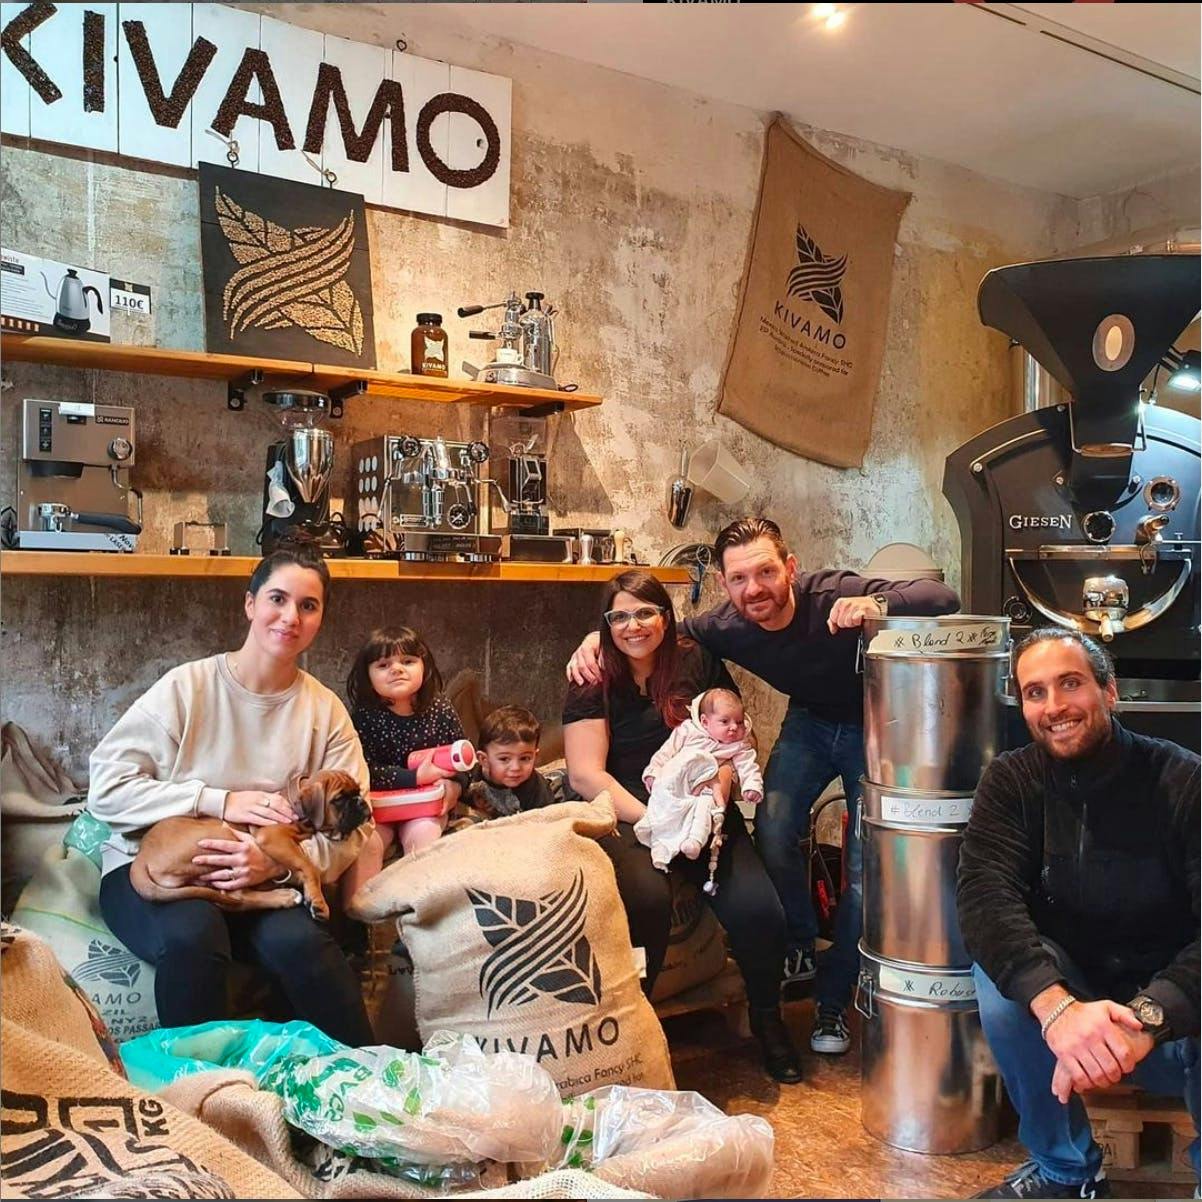 Ein Foto von den Kivamo-Inhabern und deren Familien.